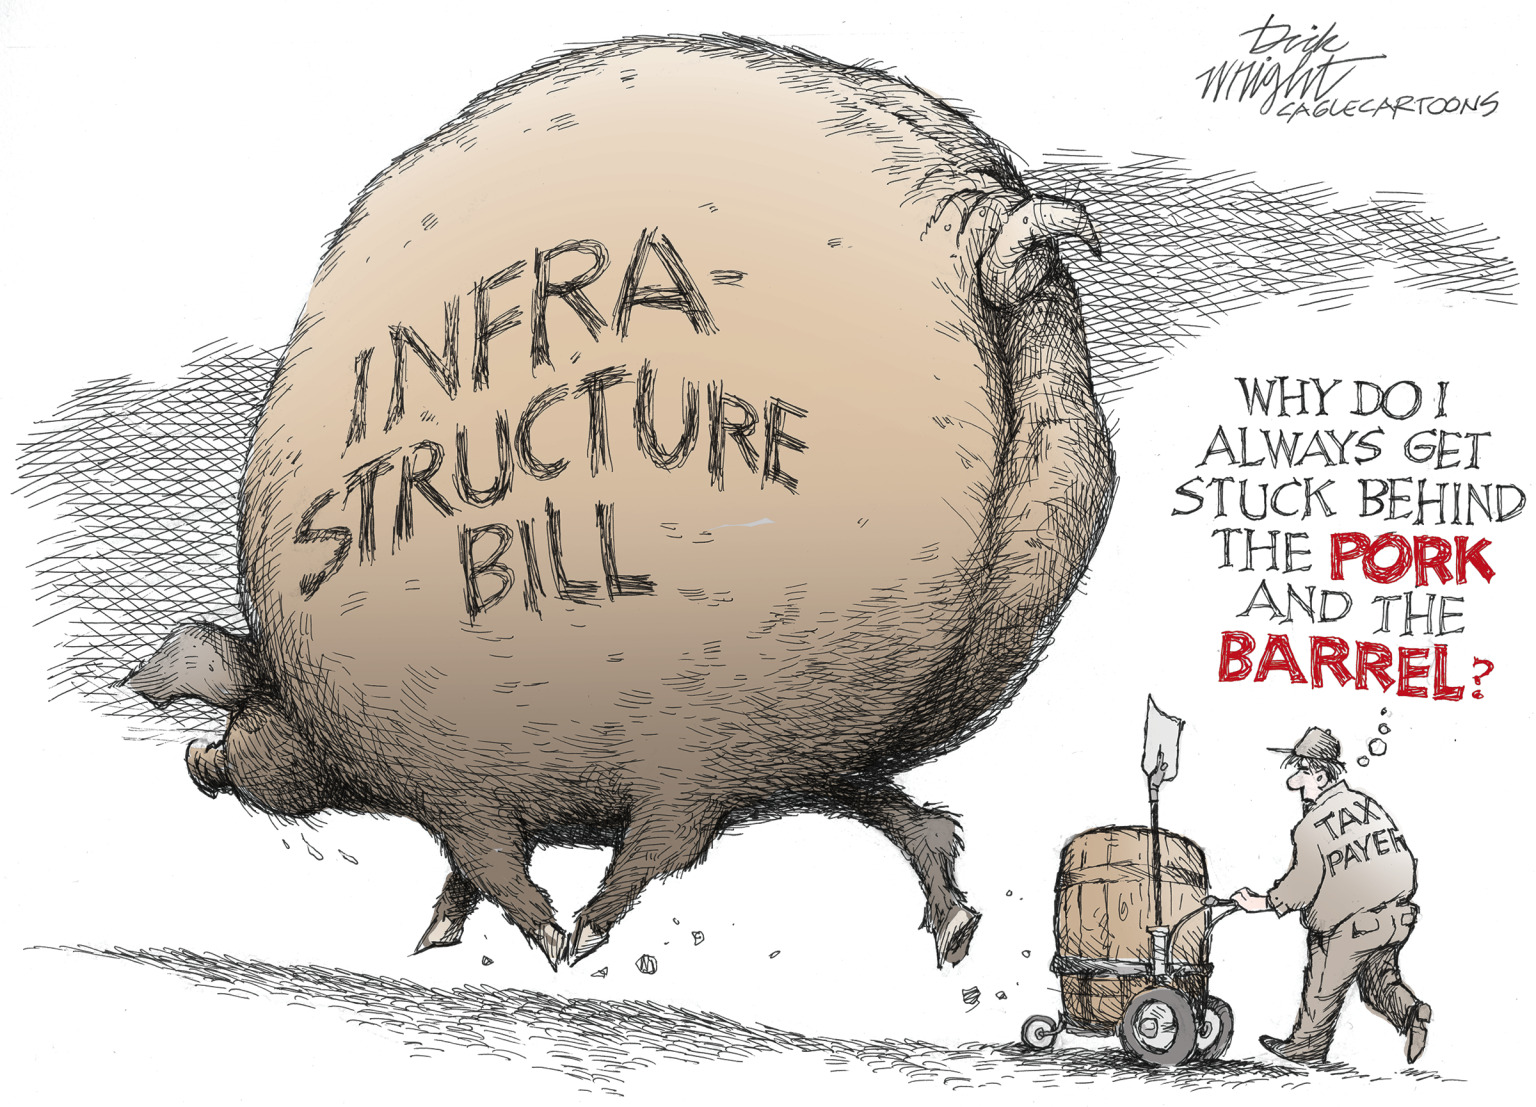 editorial cartooning about pork barrel